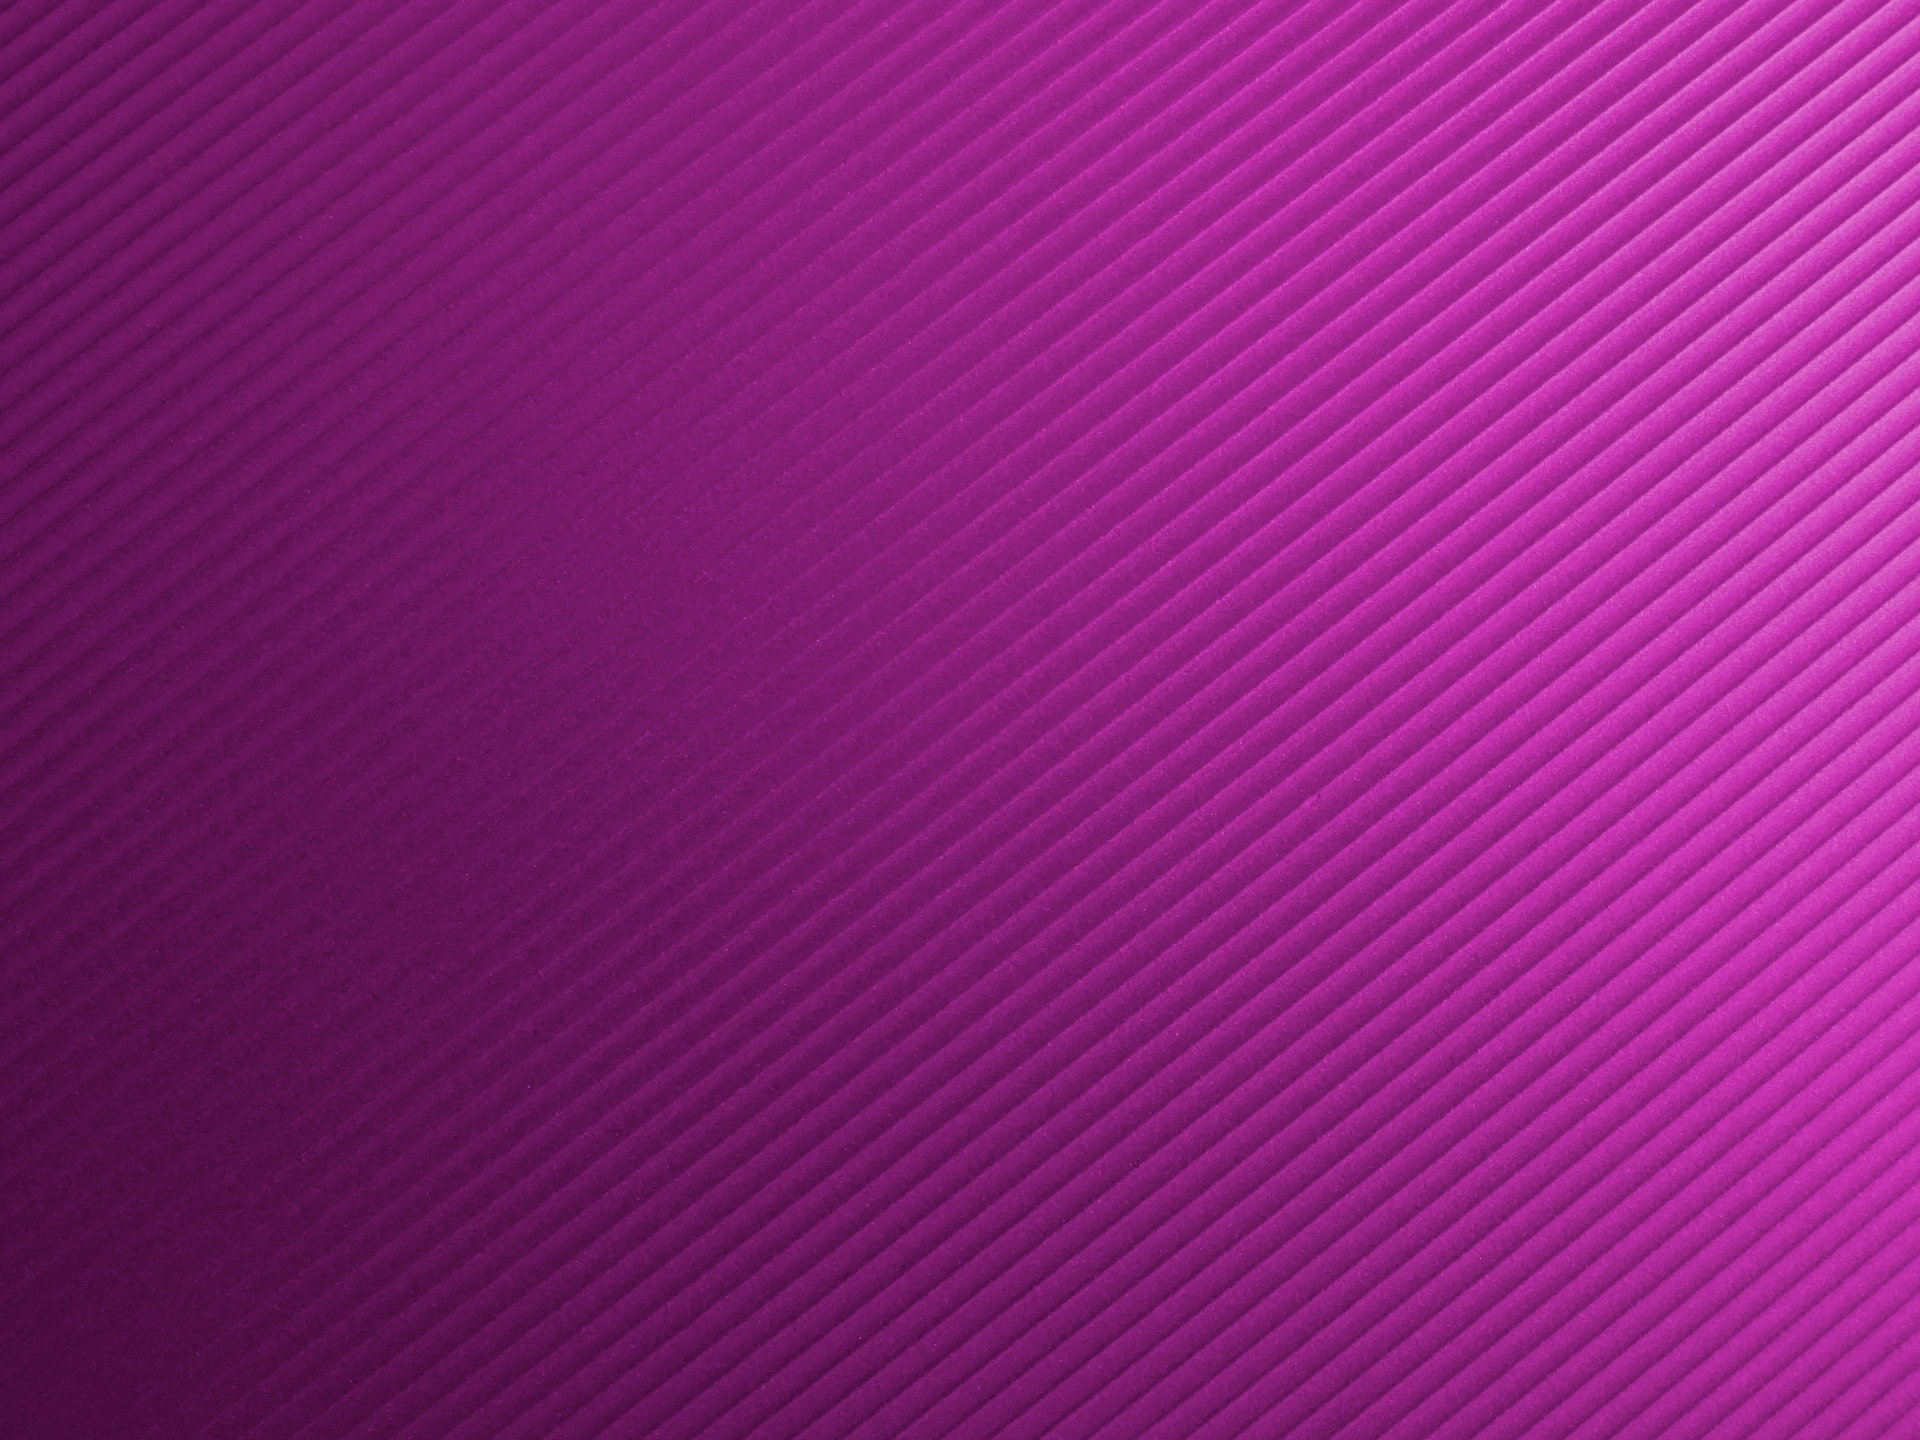 purple backgrounds pattern free photo